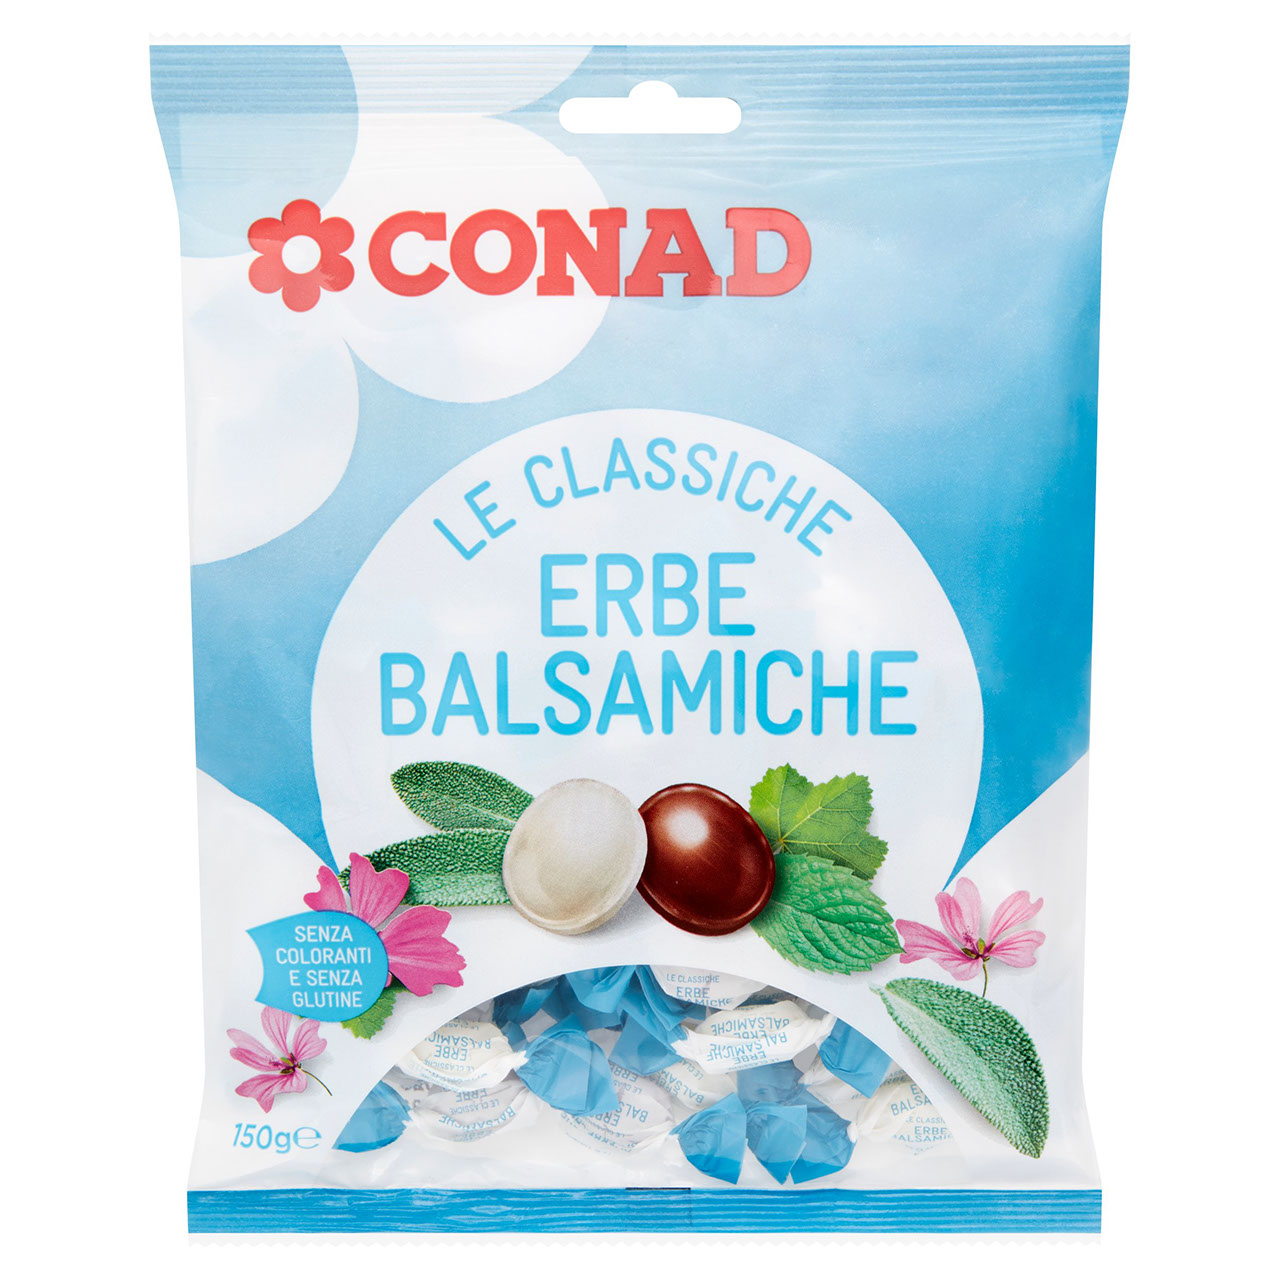 Le Classiche Erbe Balsamiche 150 g Conad online